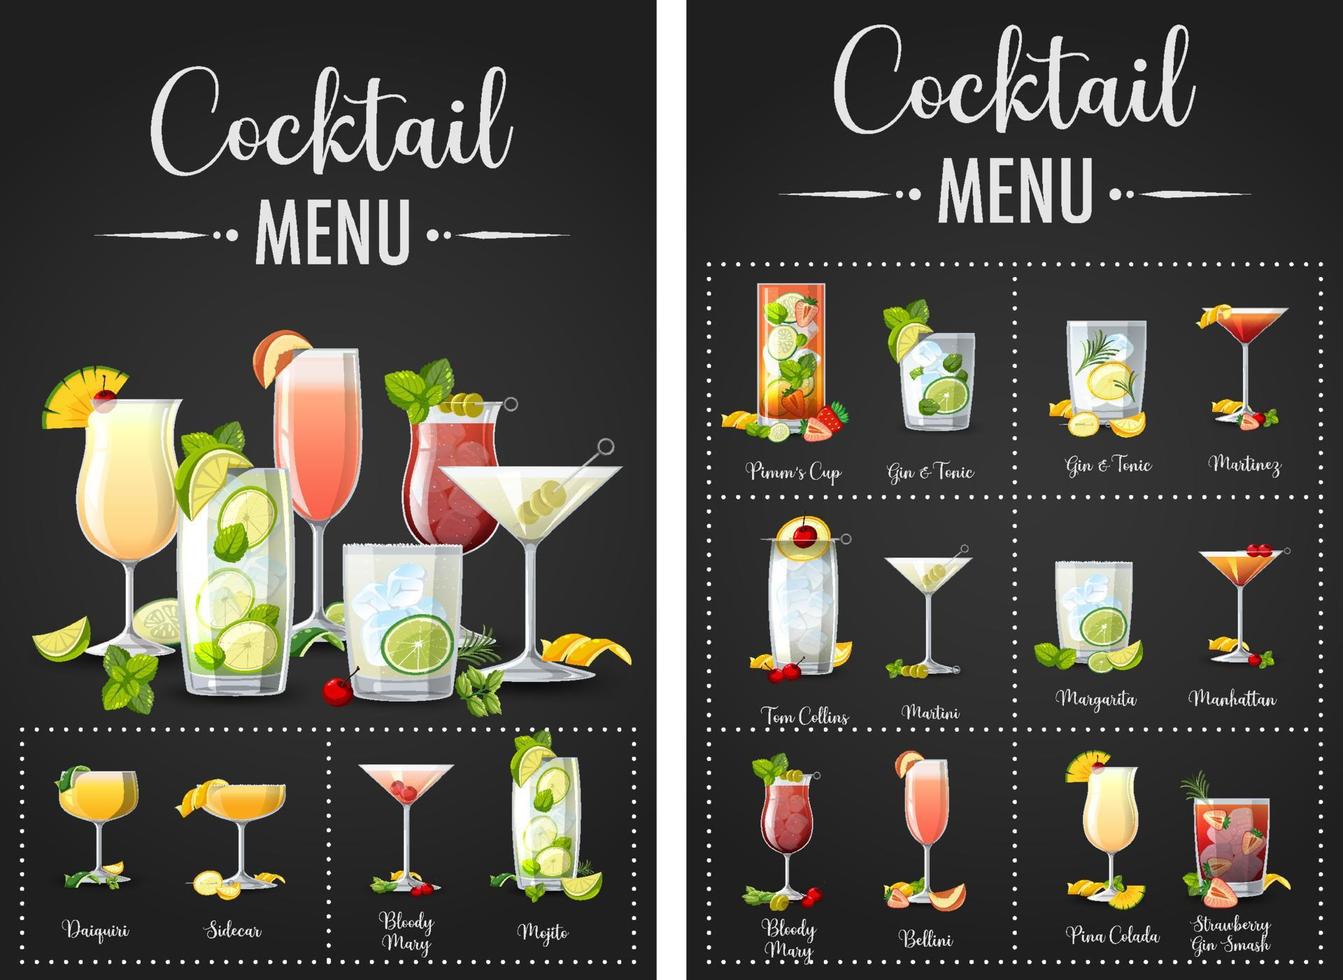 een gedrukt menu met cocktails vector